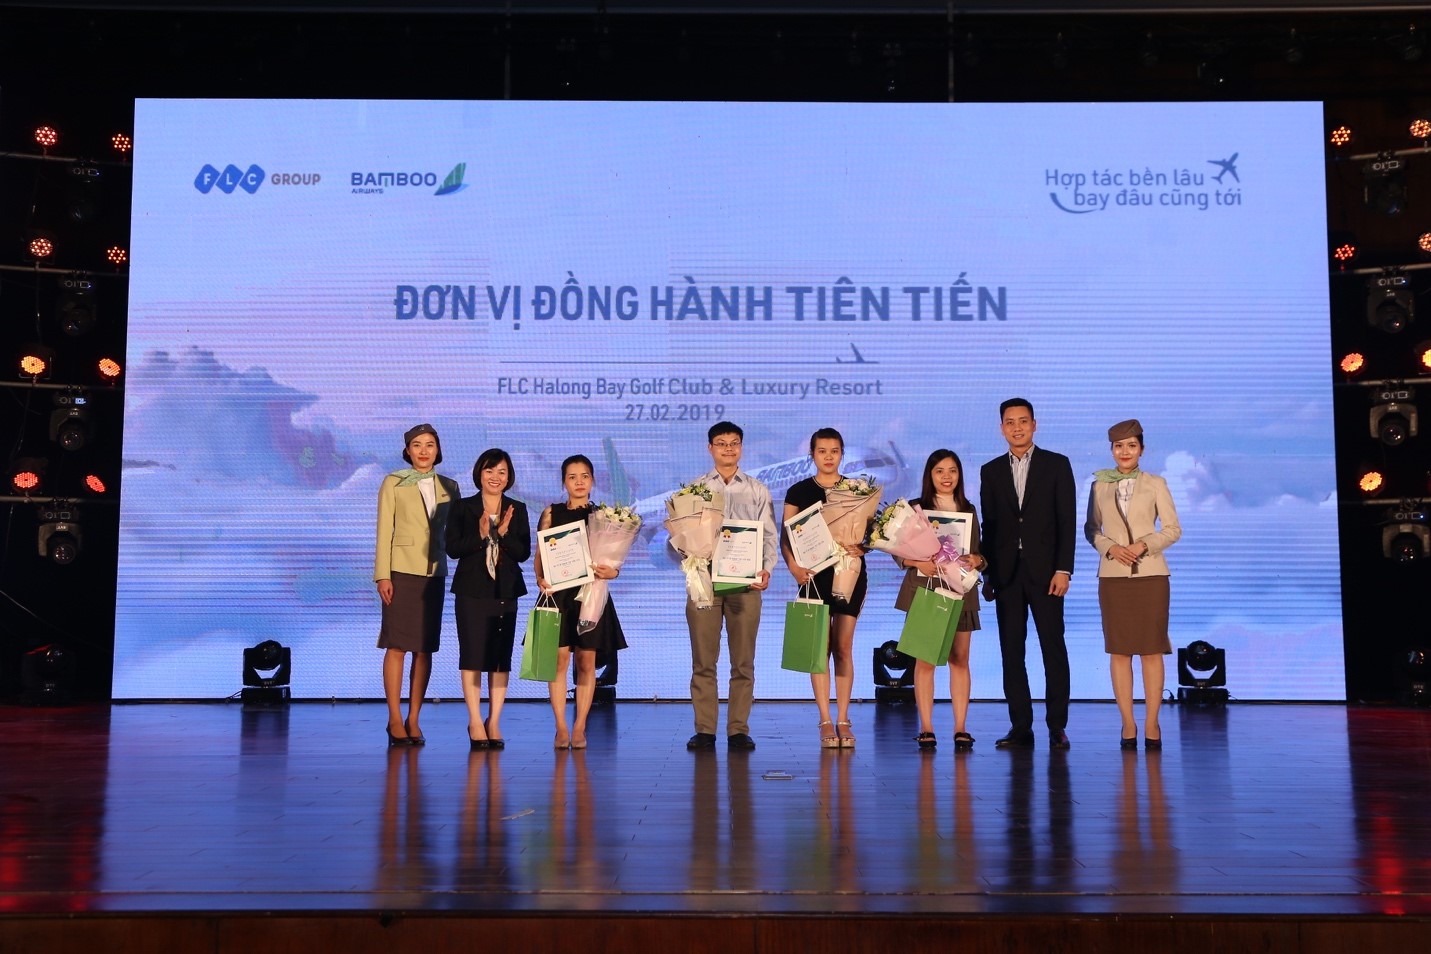 Khai thác thành công 1.000 chuyến bay trong 5 tuần, Bamboo Airways đẩy mạnh tăng chuyến